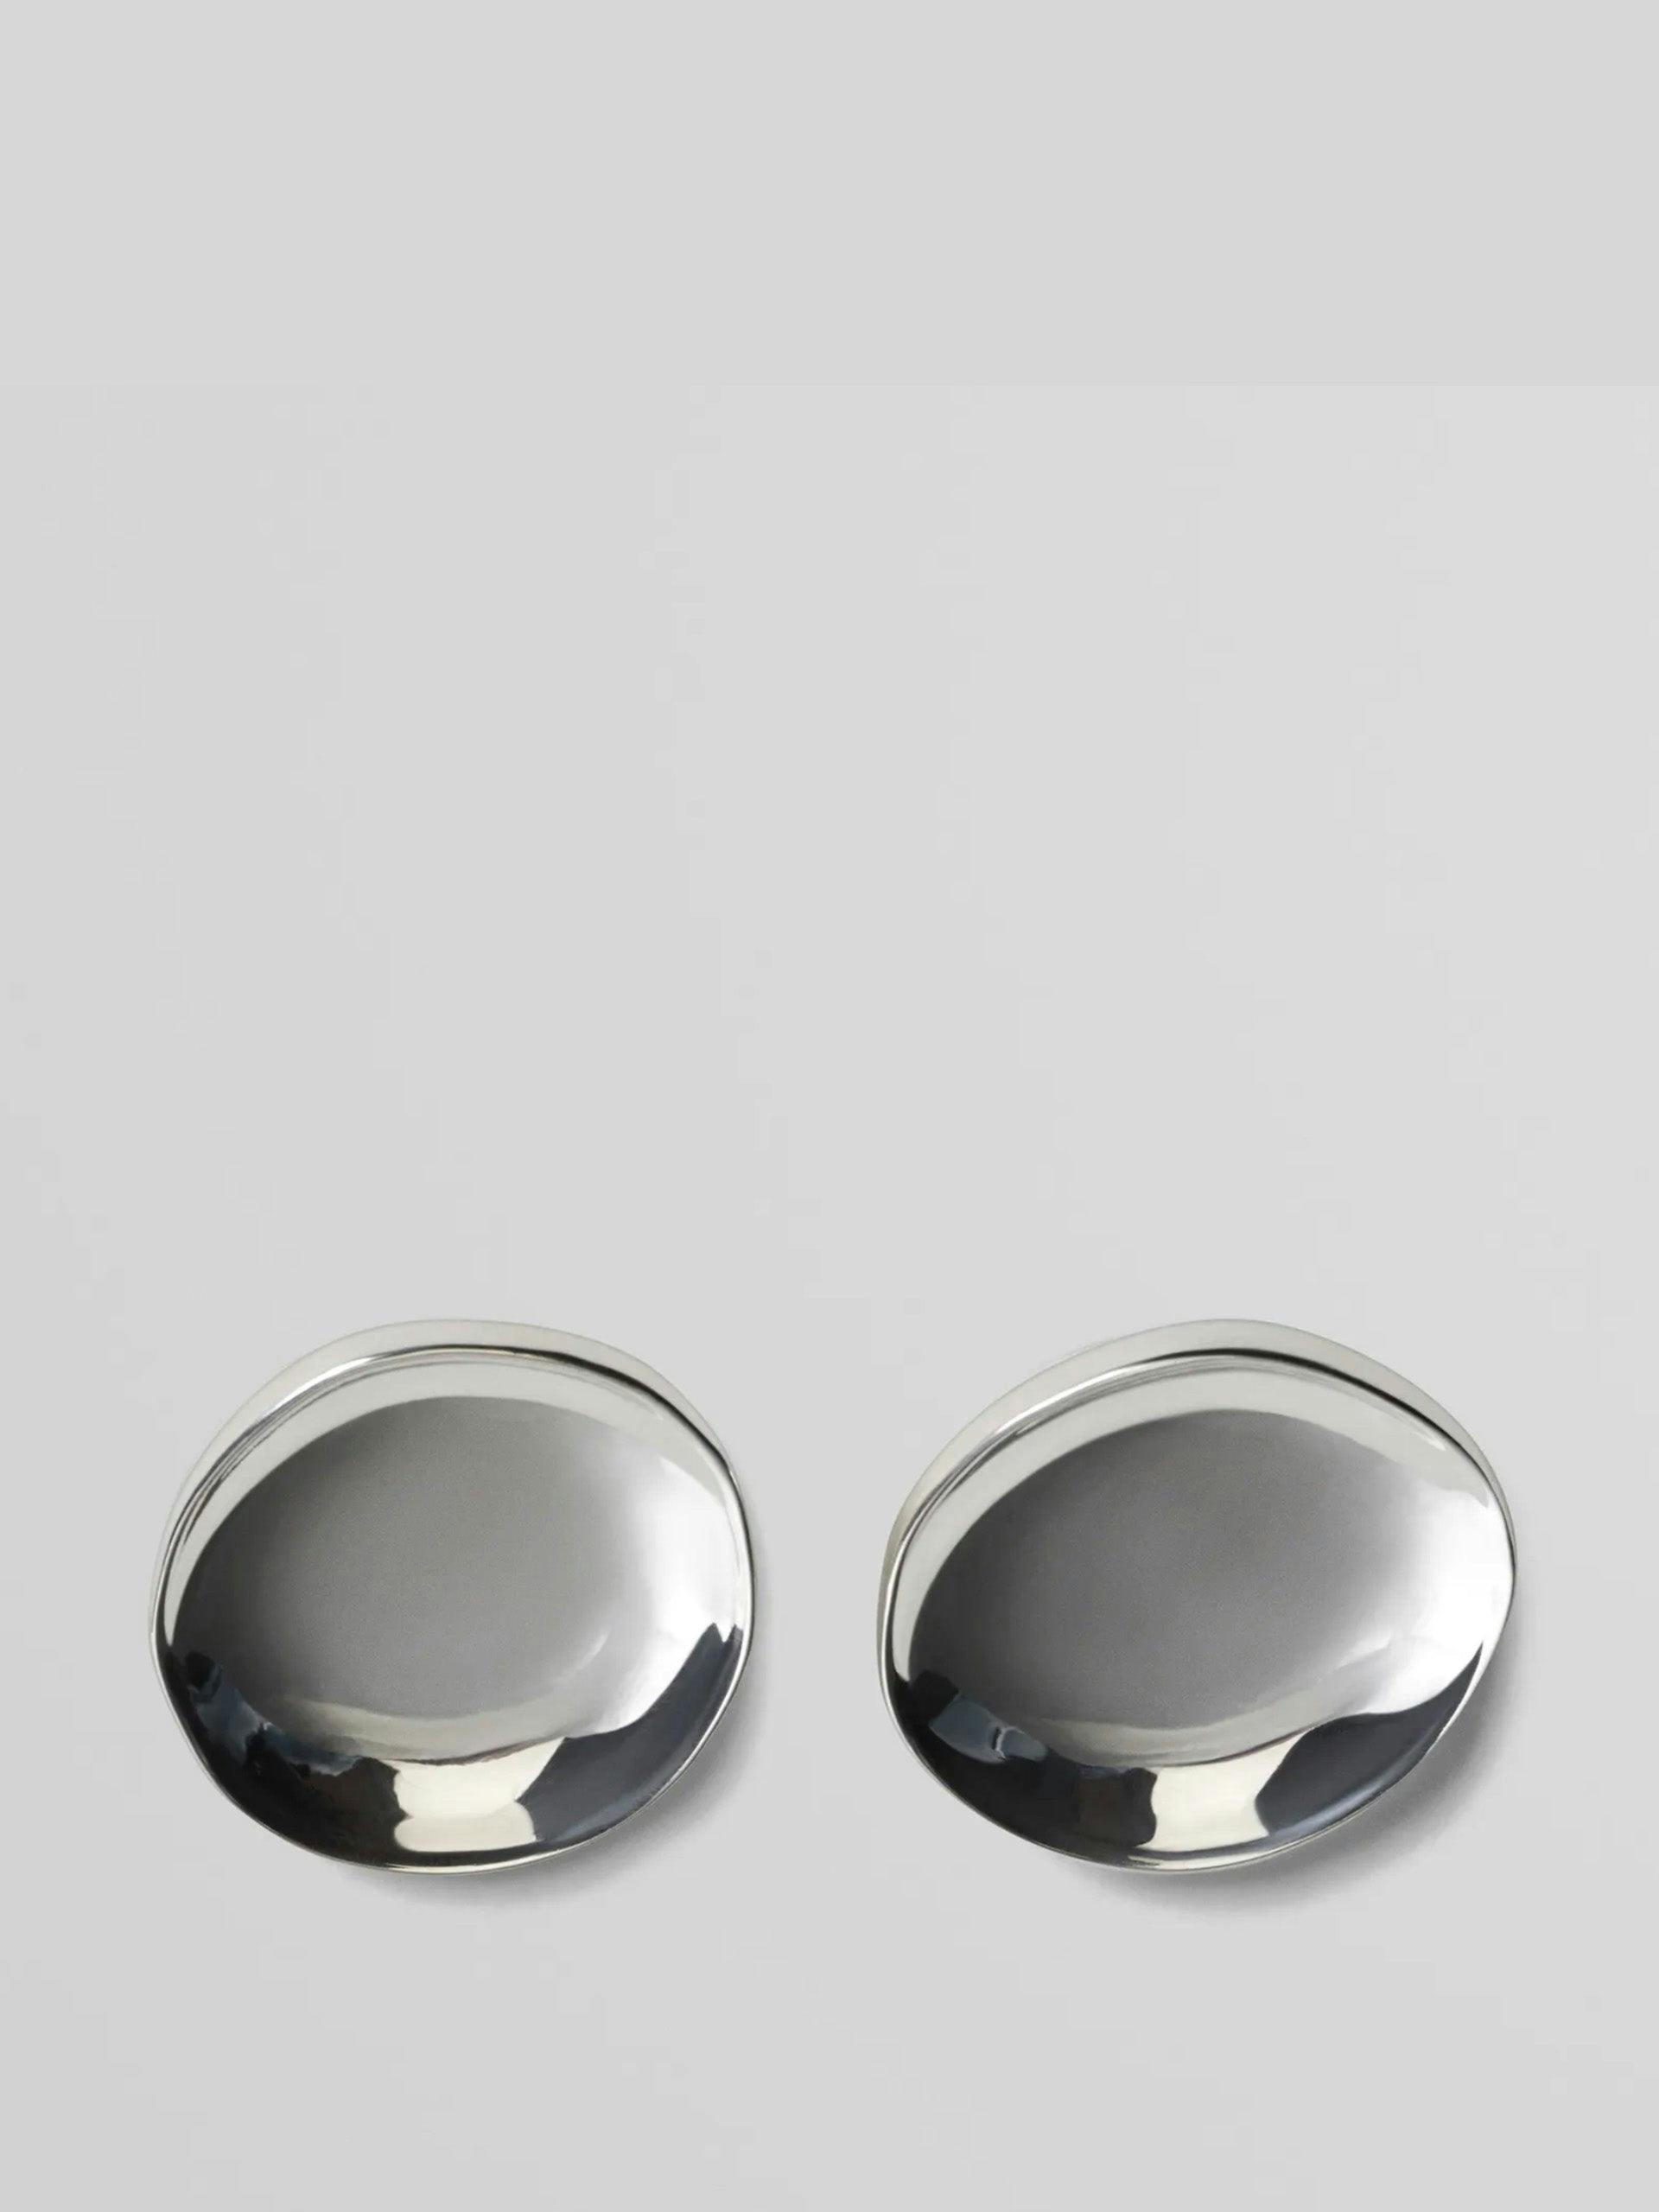 Medallion dish earrings